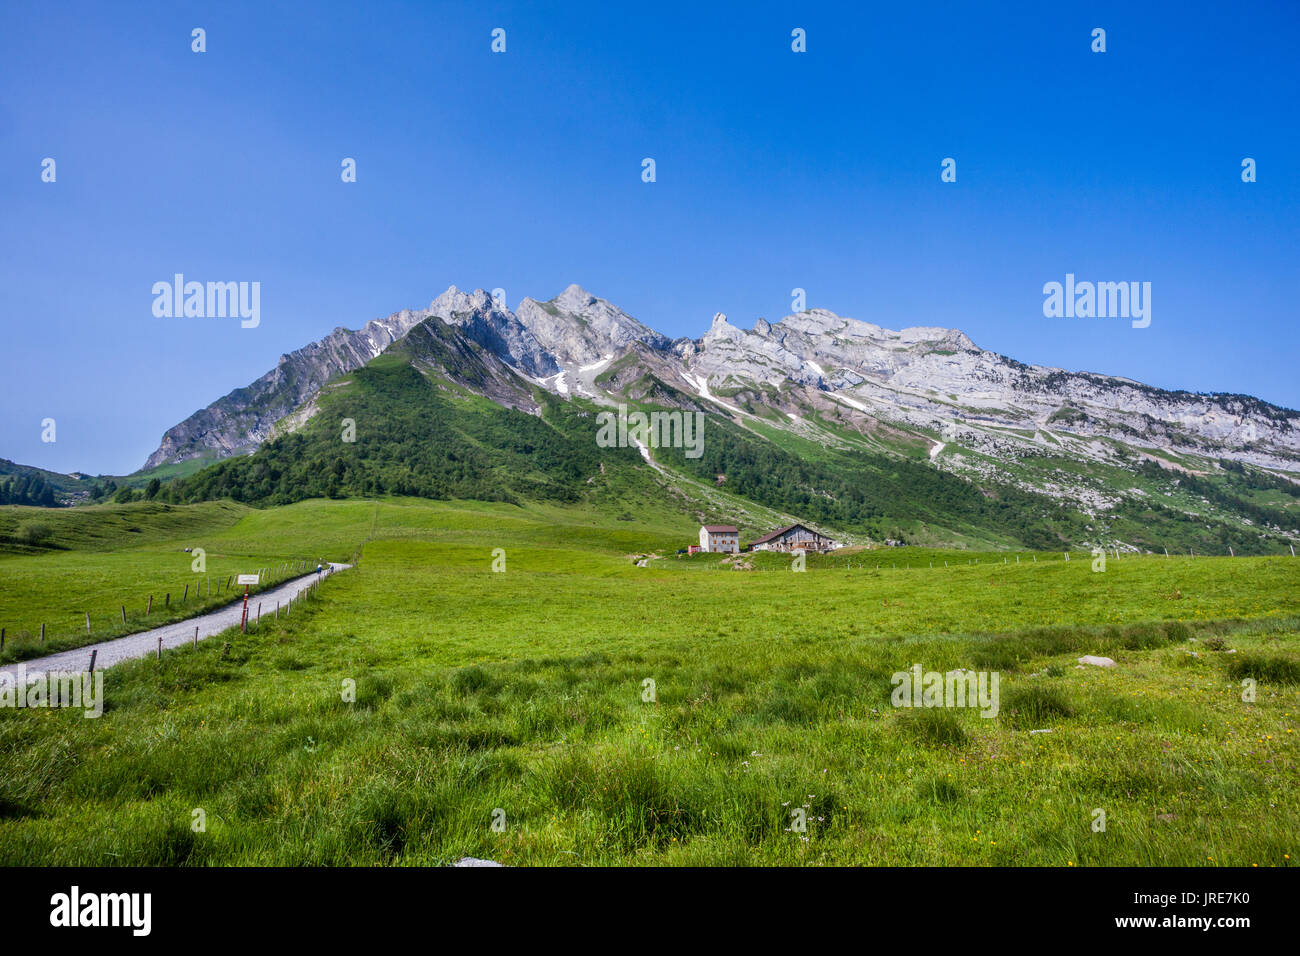 France, Haute-Savoie/Savoie, vue sur la chaîne des Aravis depuis le Col des Aravis, le col de montagne dans les Alpes qui relie les villes de la Banque D'Images